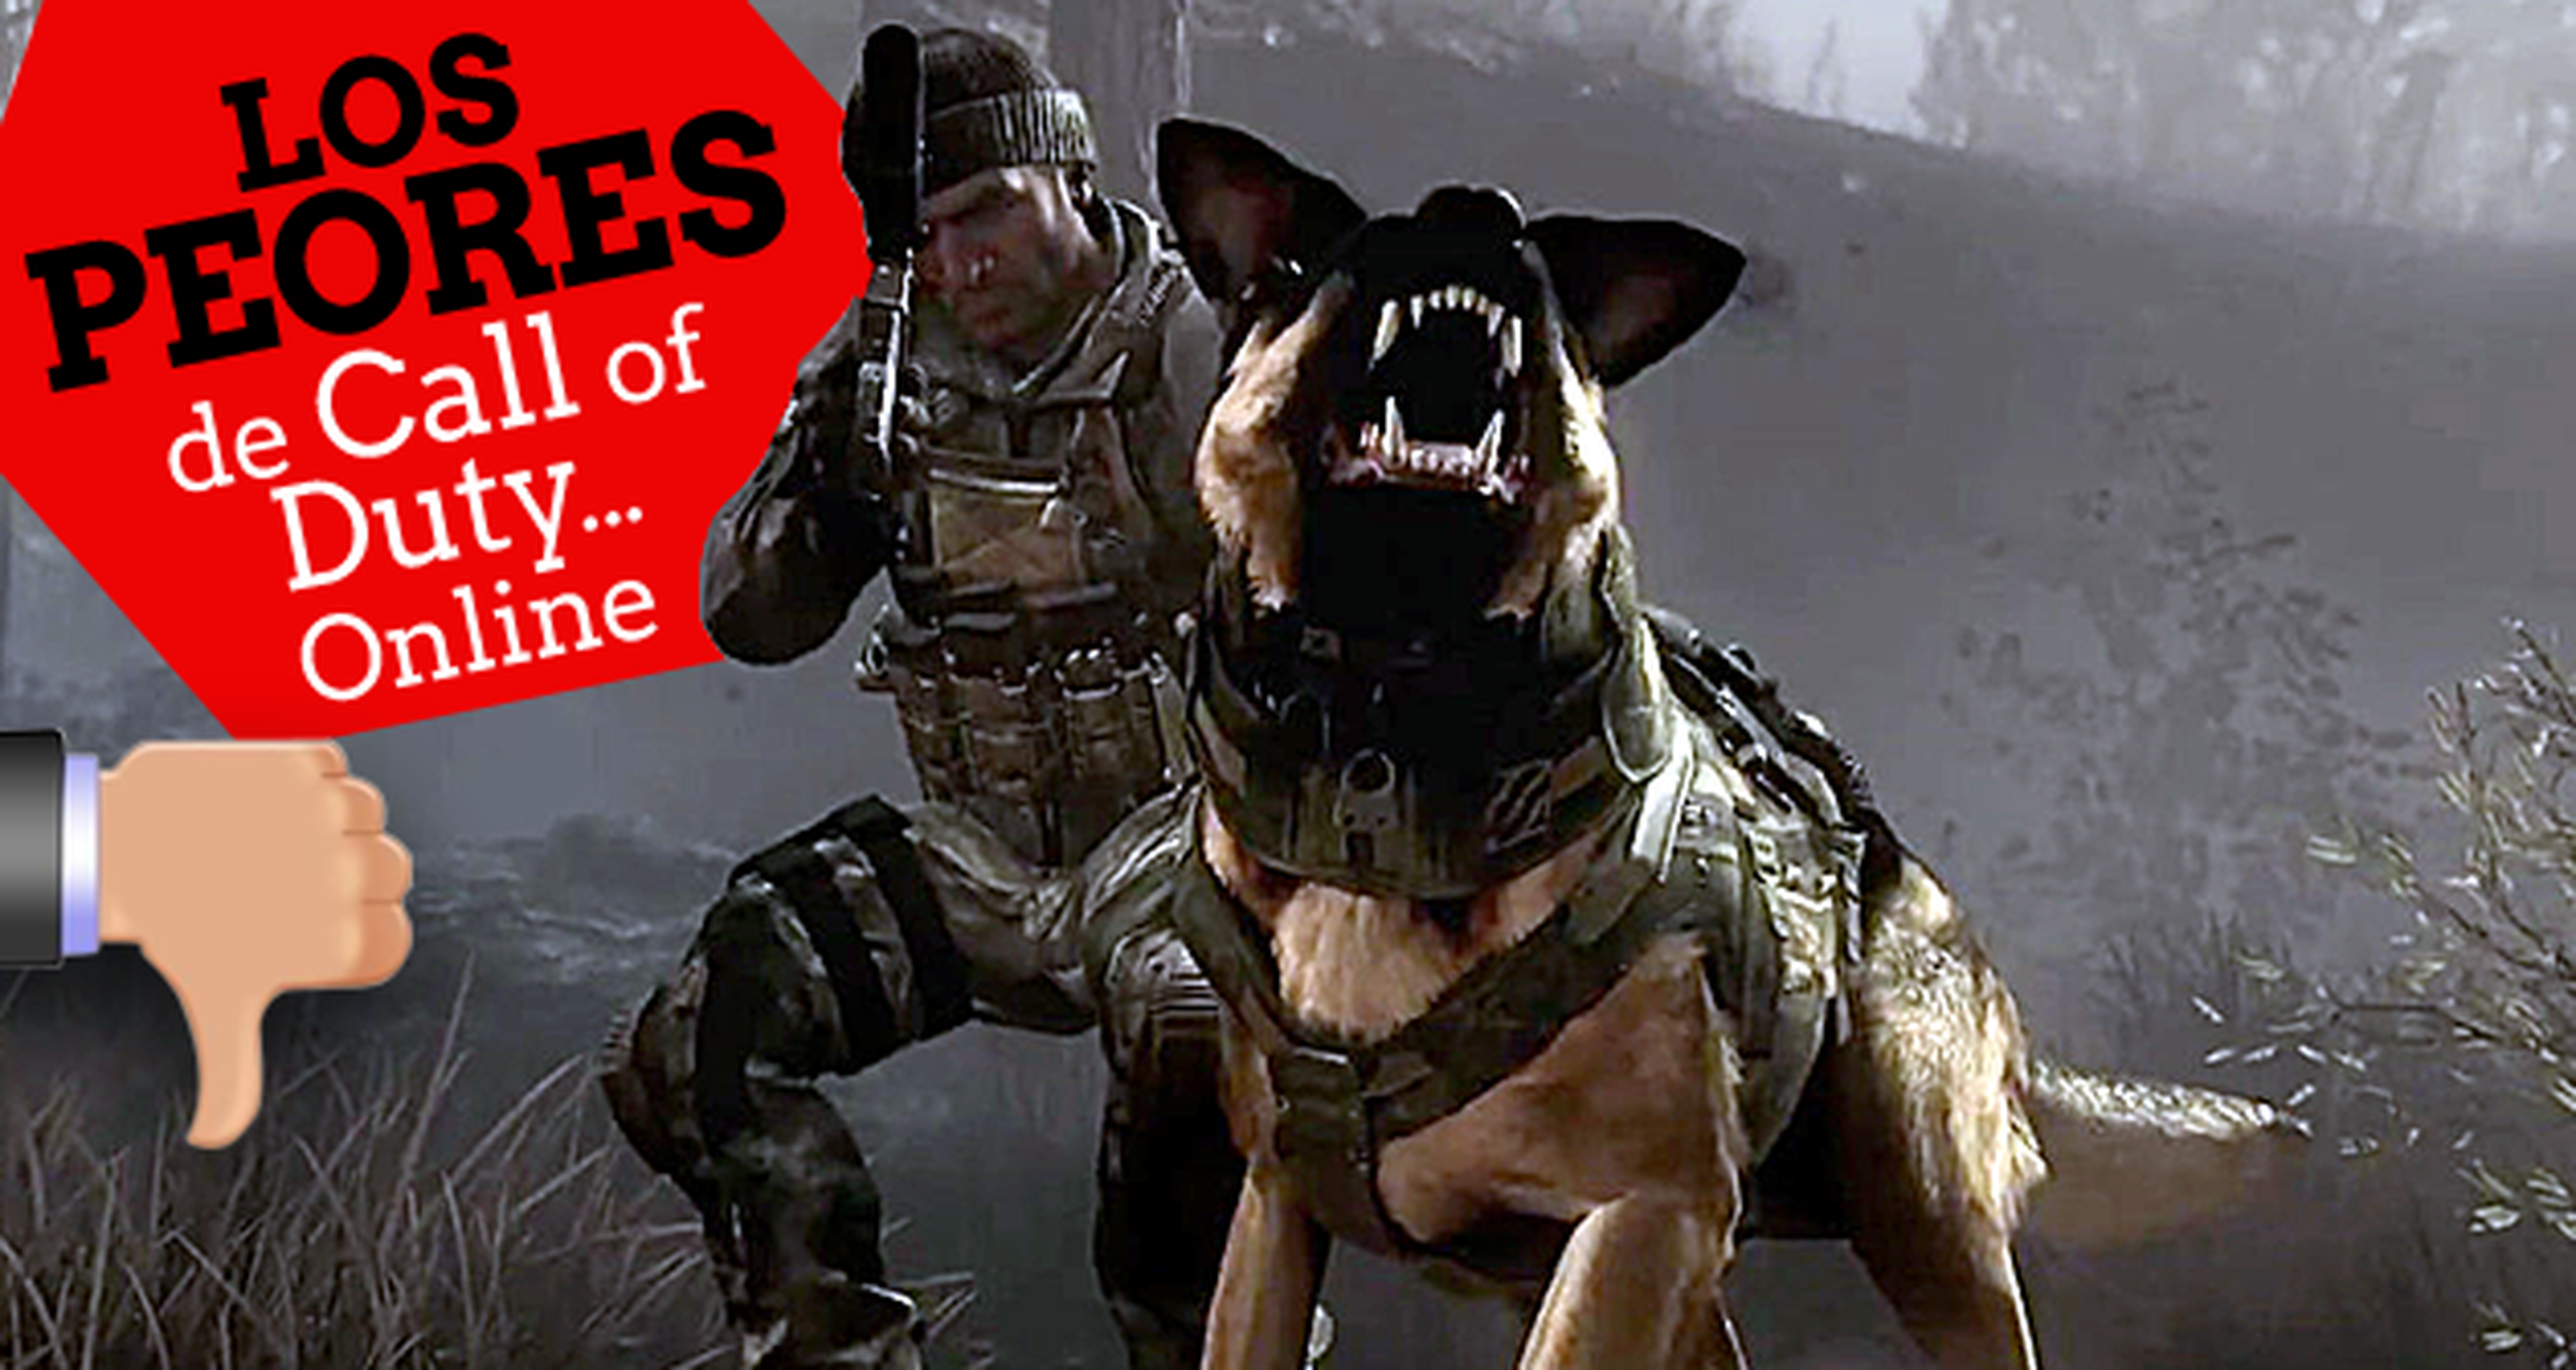 Los 10 peores de Call of Duty... online